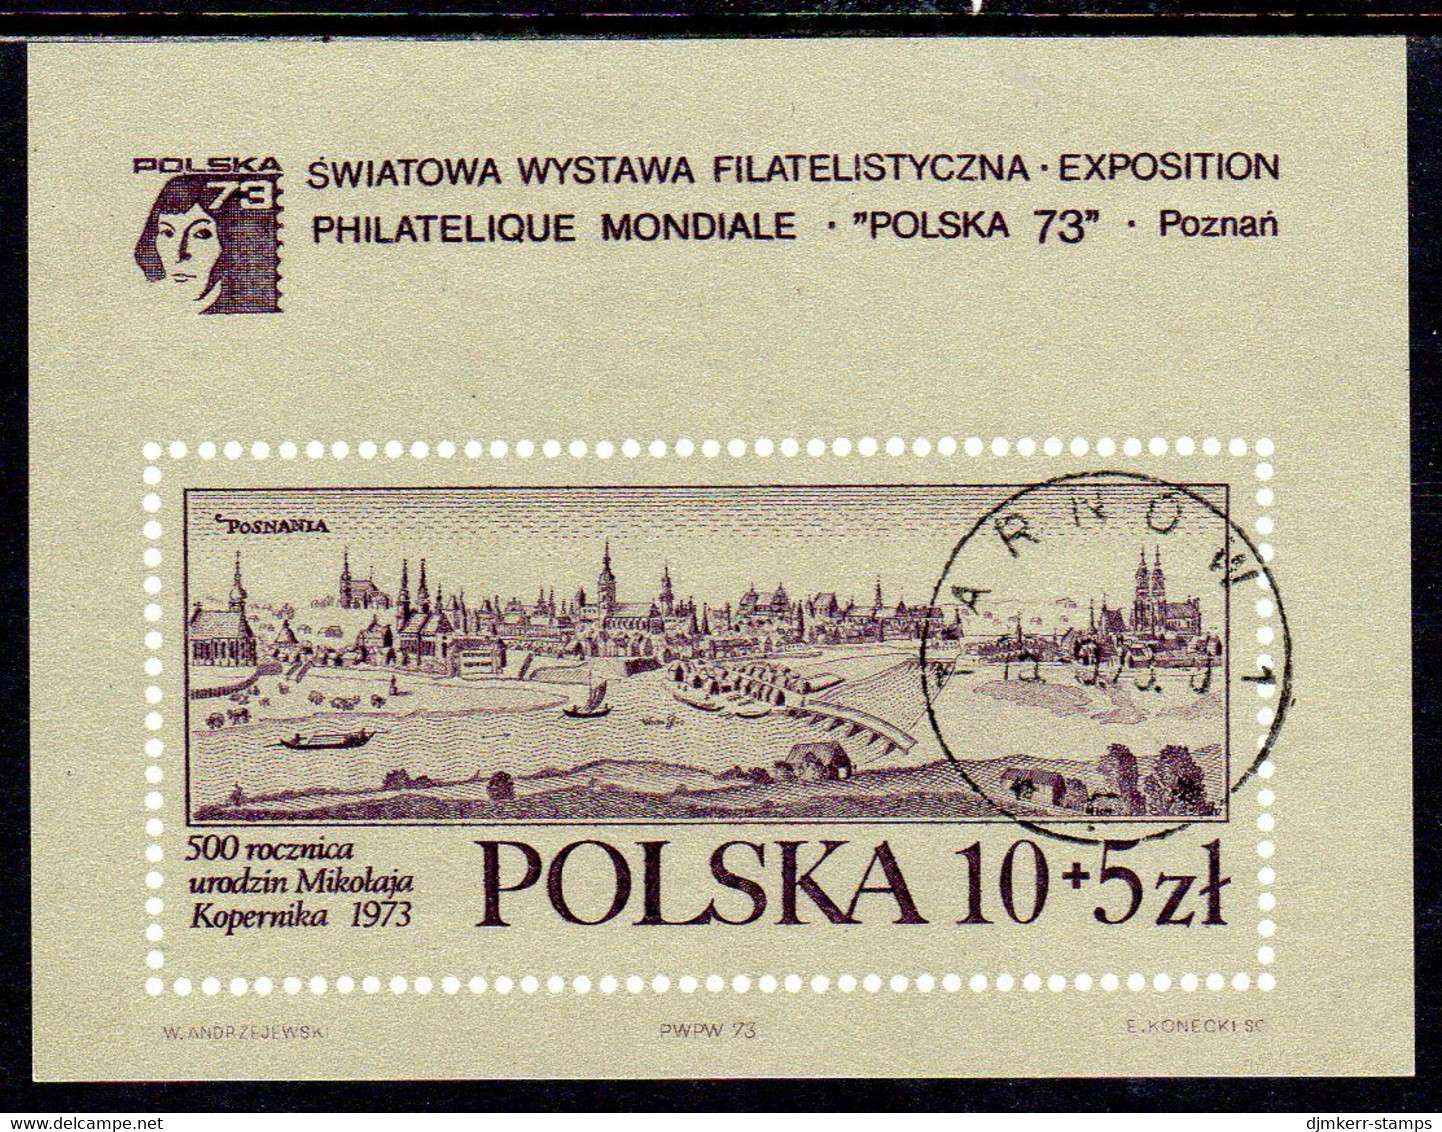 POLAND 1973 PO:SKA '73 Stamp Exhibition Block Used.  Michel Block 55 - Gebraucht